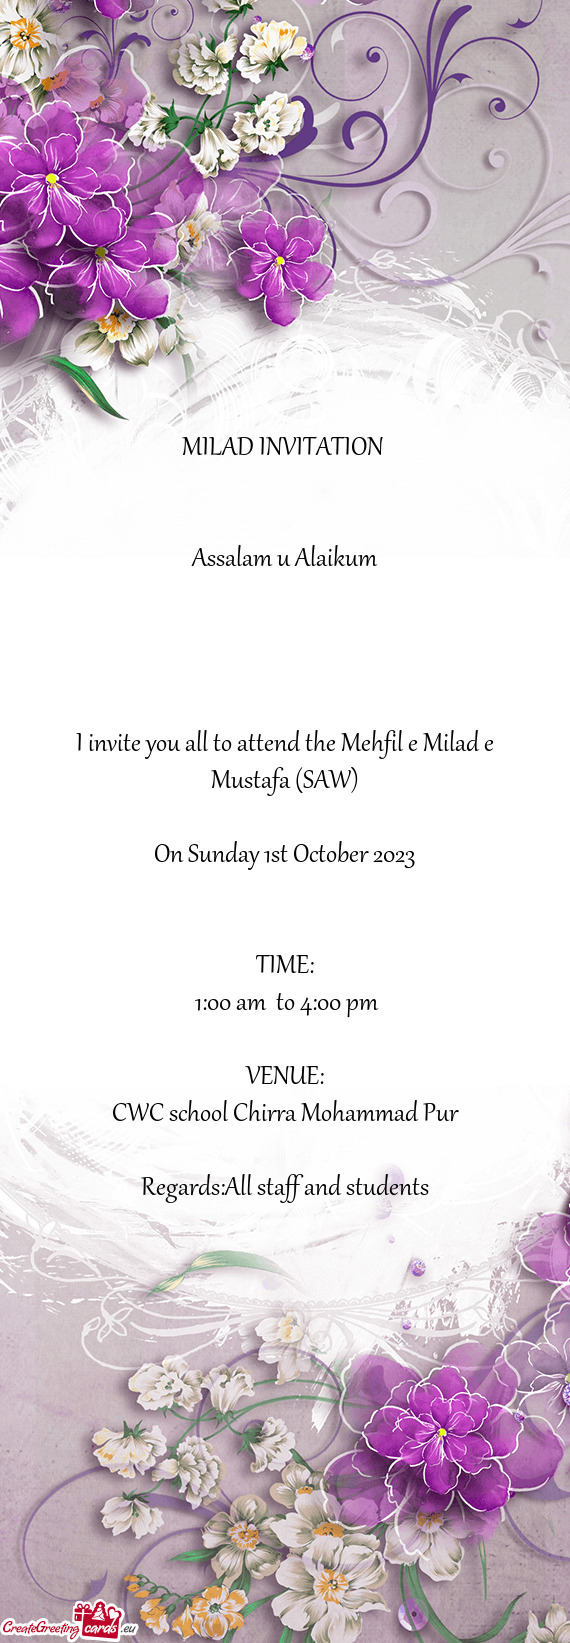 I invite you all to attend the Mehfil e Milad e Mustafa (SAW)